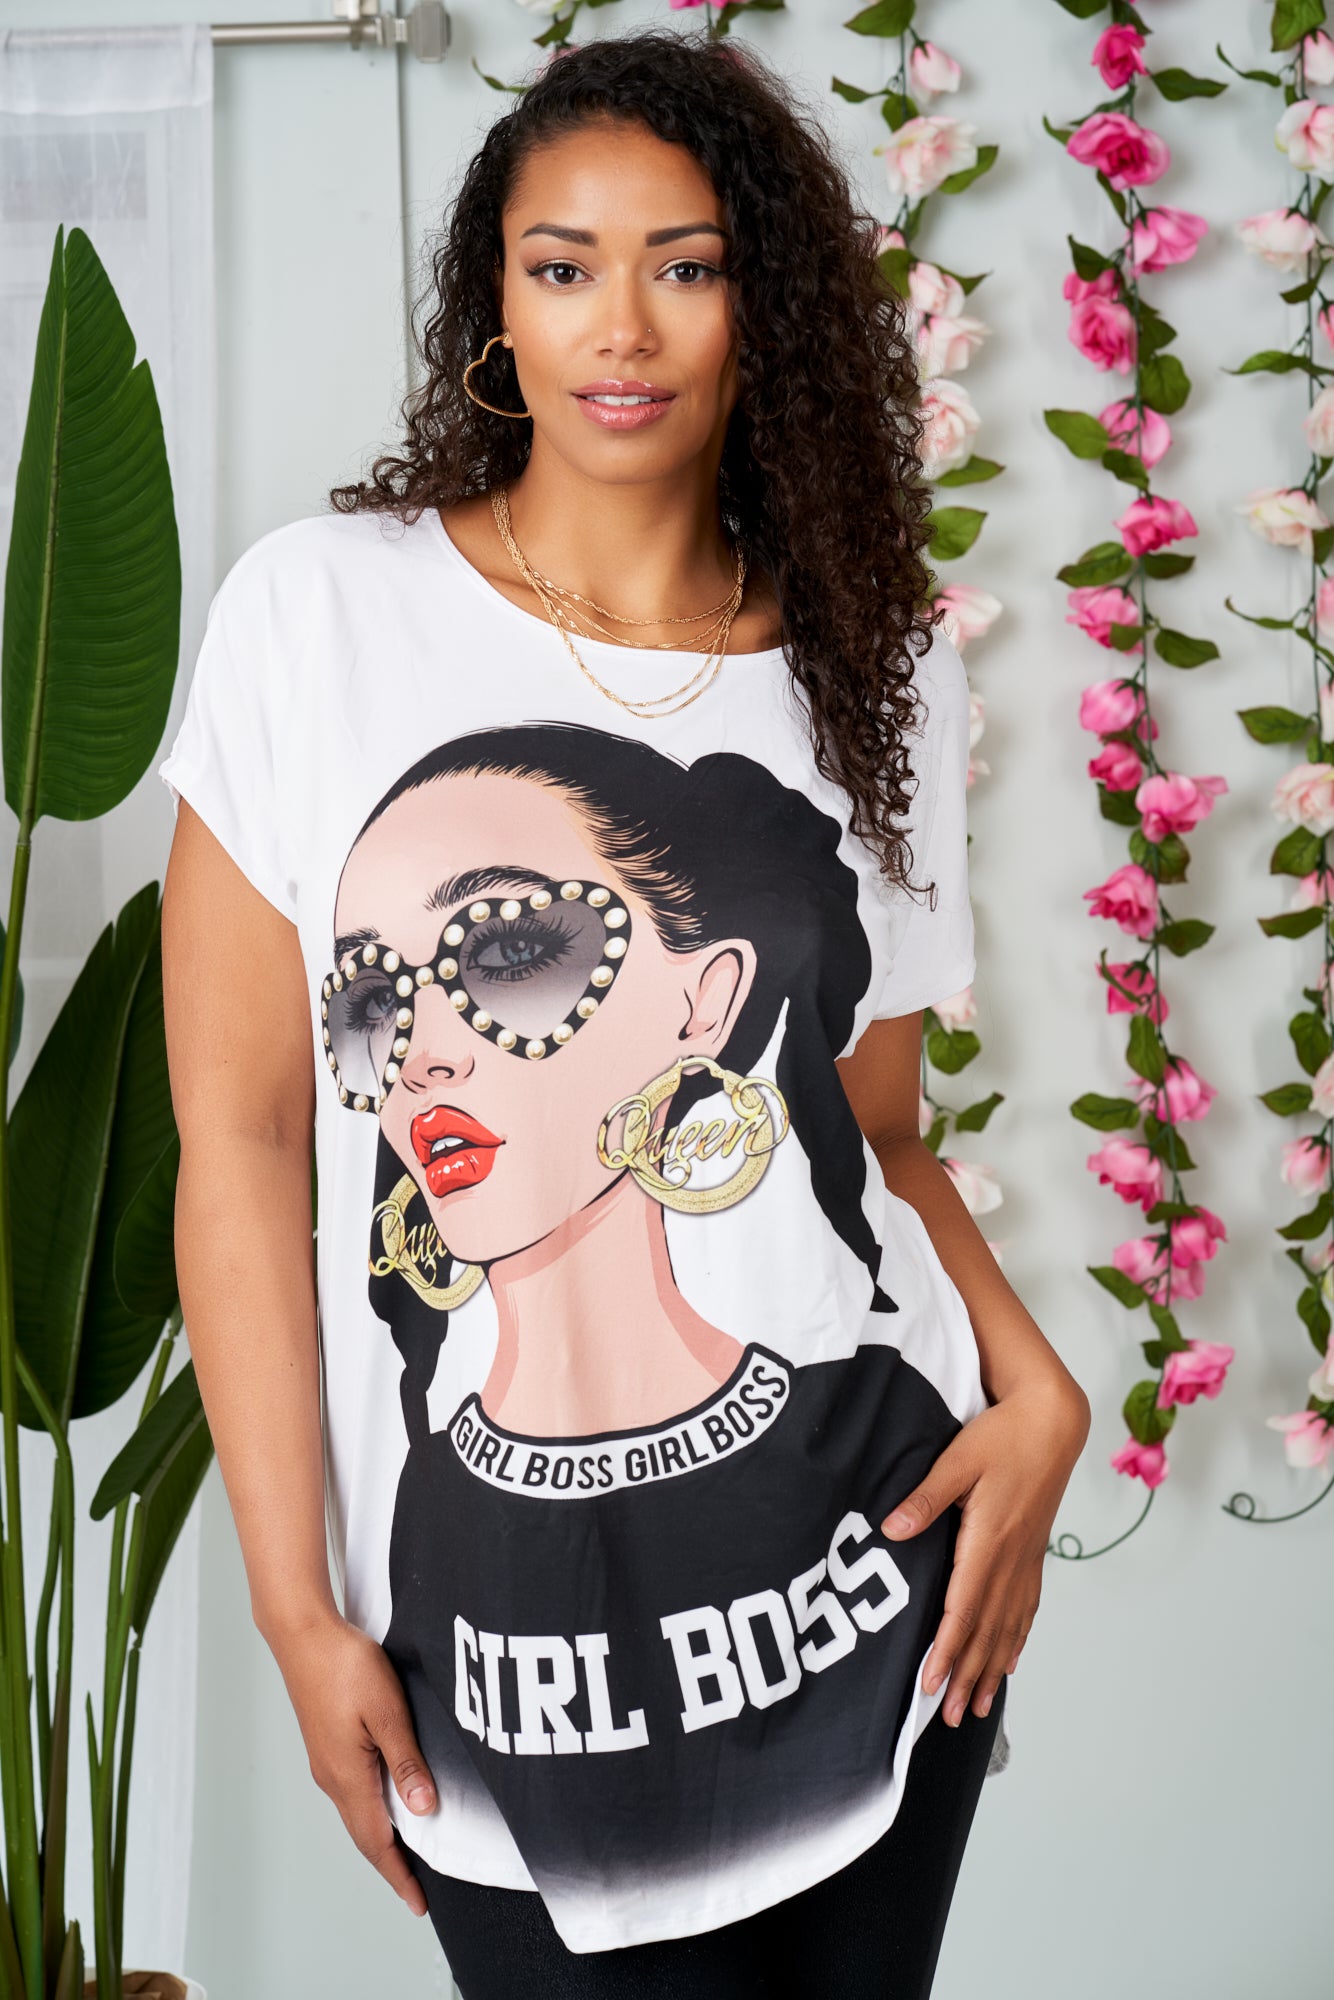 Girl Boss T-Shirt Dress